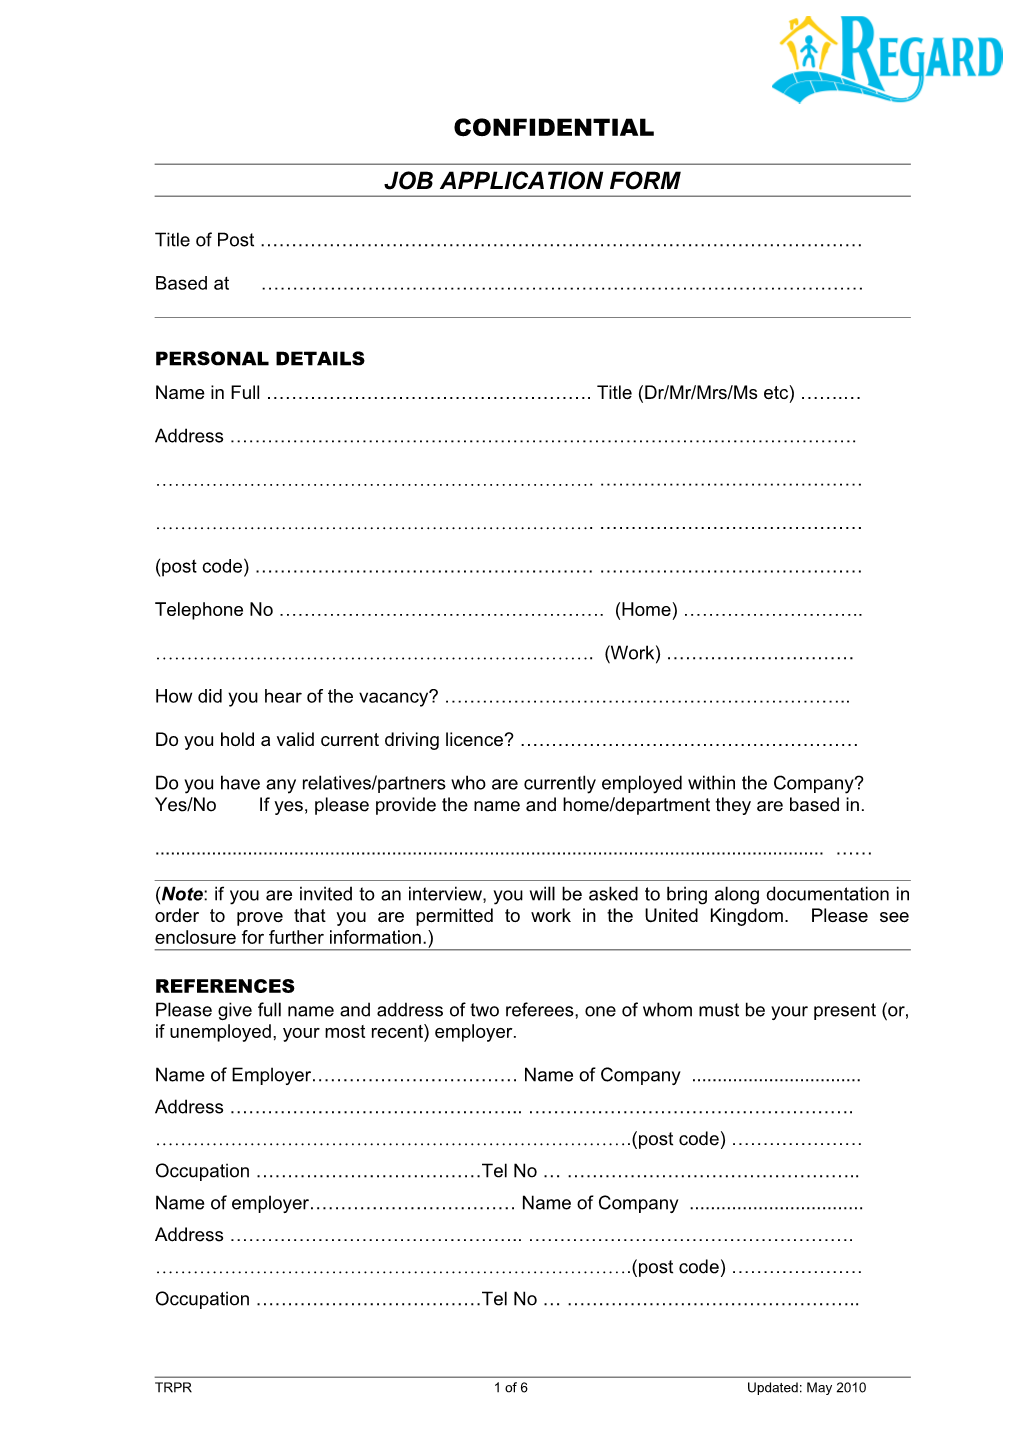 Job Application Form s34